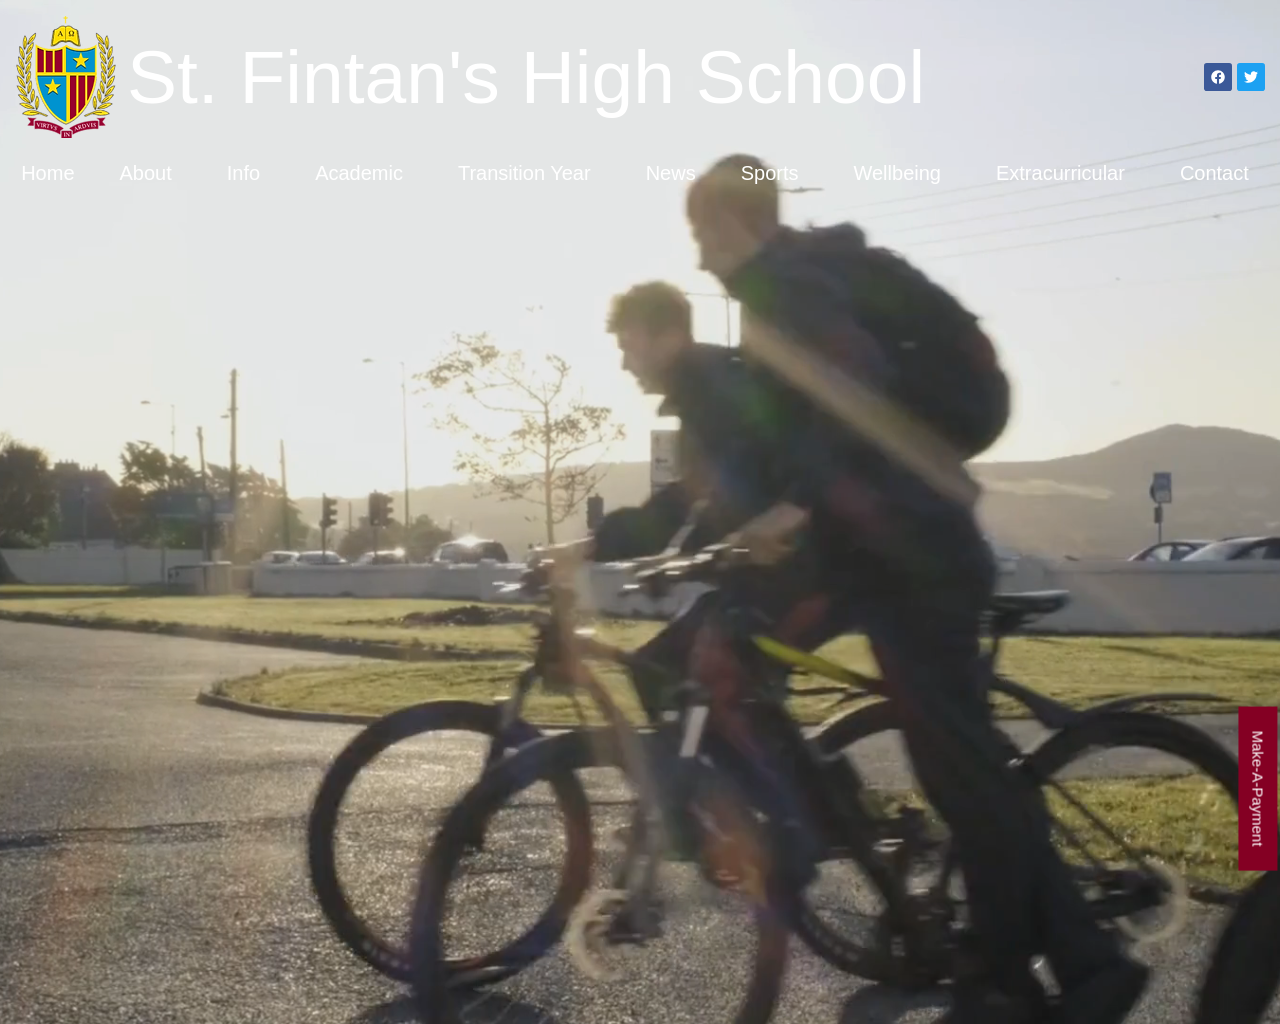 St. Fintan's High School